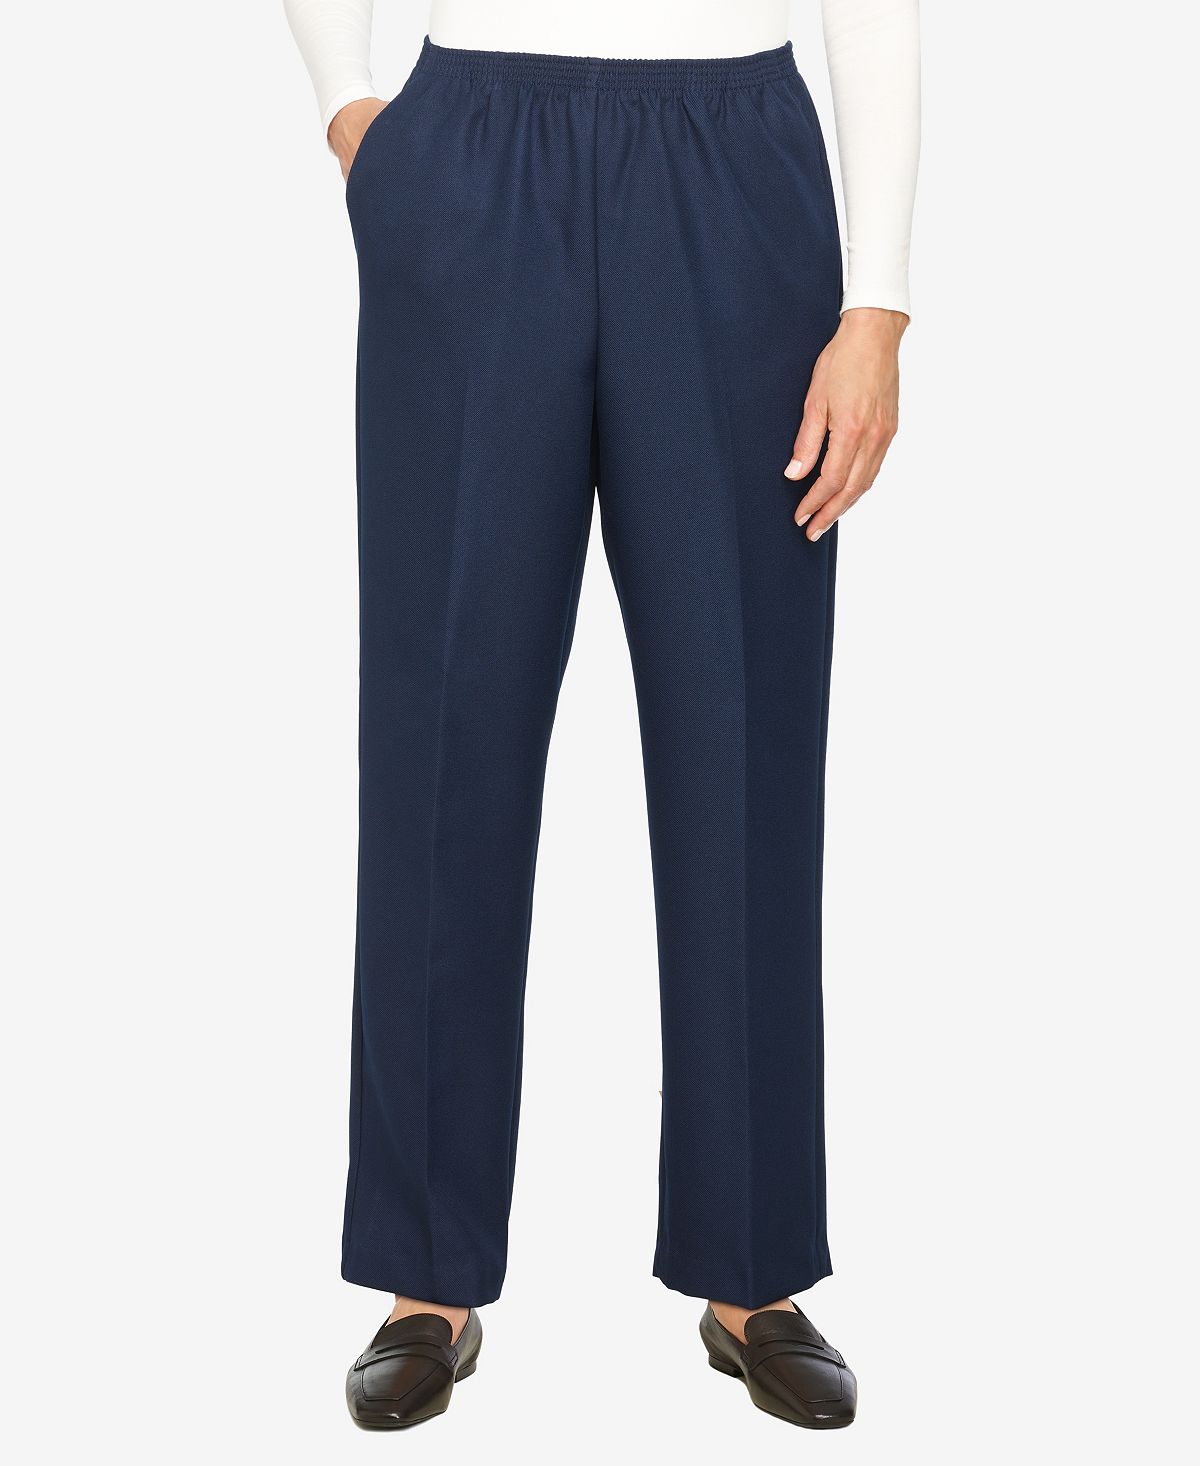 Плюс размер классические прямые брюки средней длины без застежек Alfred Dunner, синий комфортный пояс больших размеров средняя посадка прямые джинсовые брюки средней длины alfred dunner черный